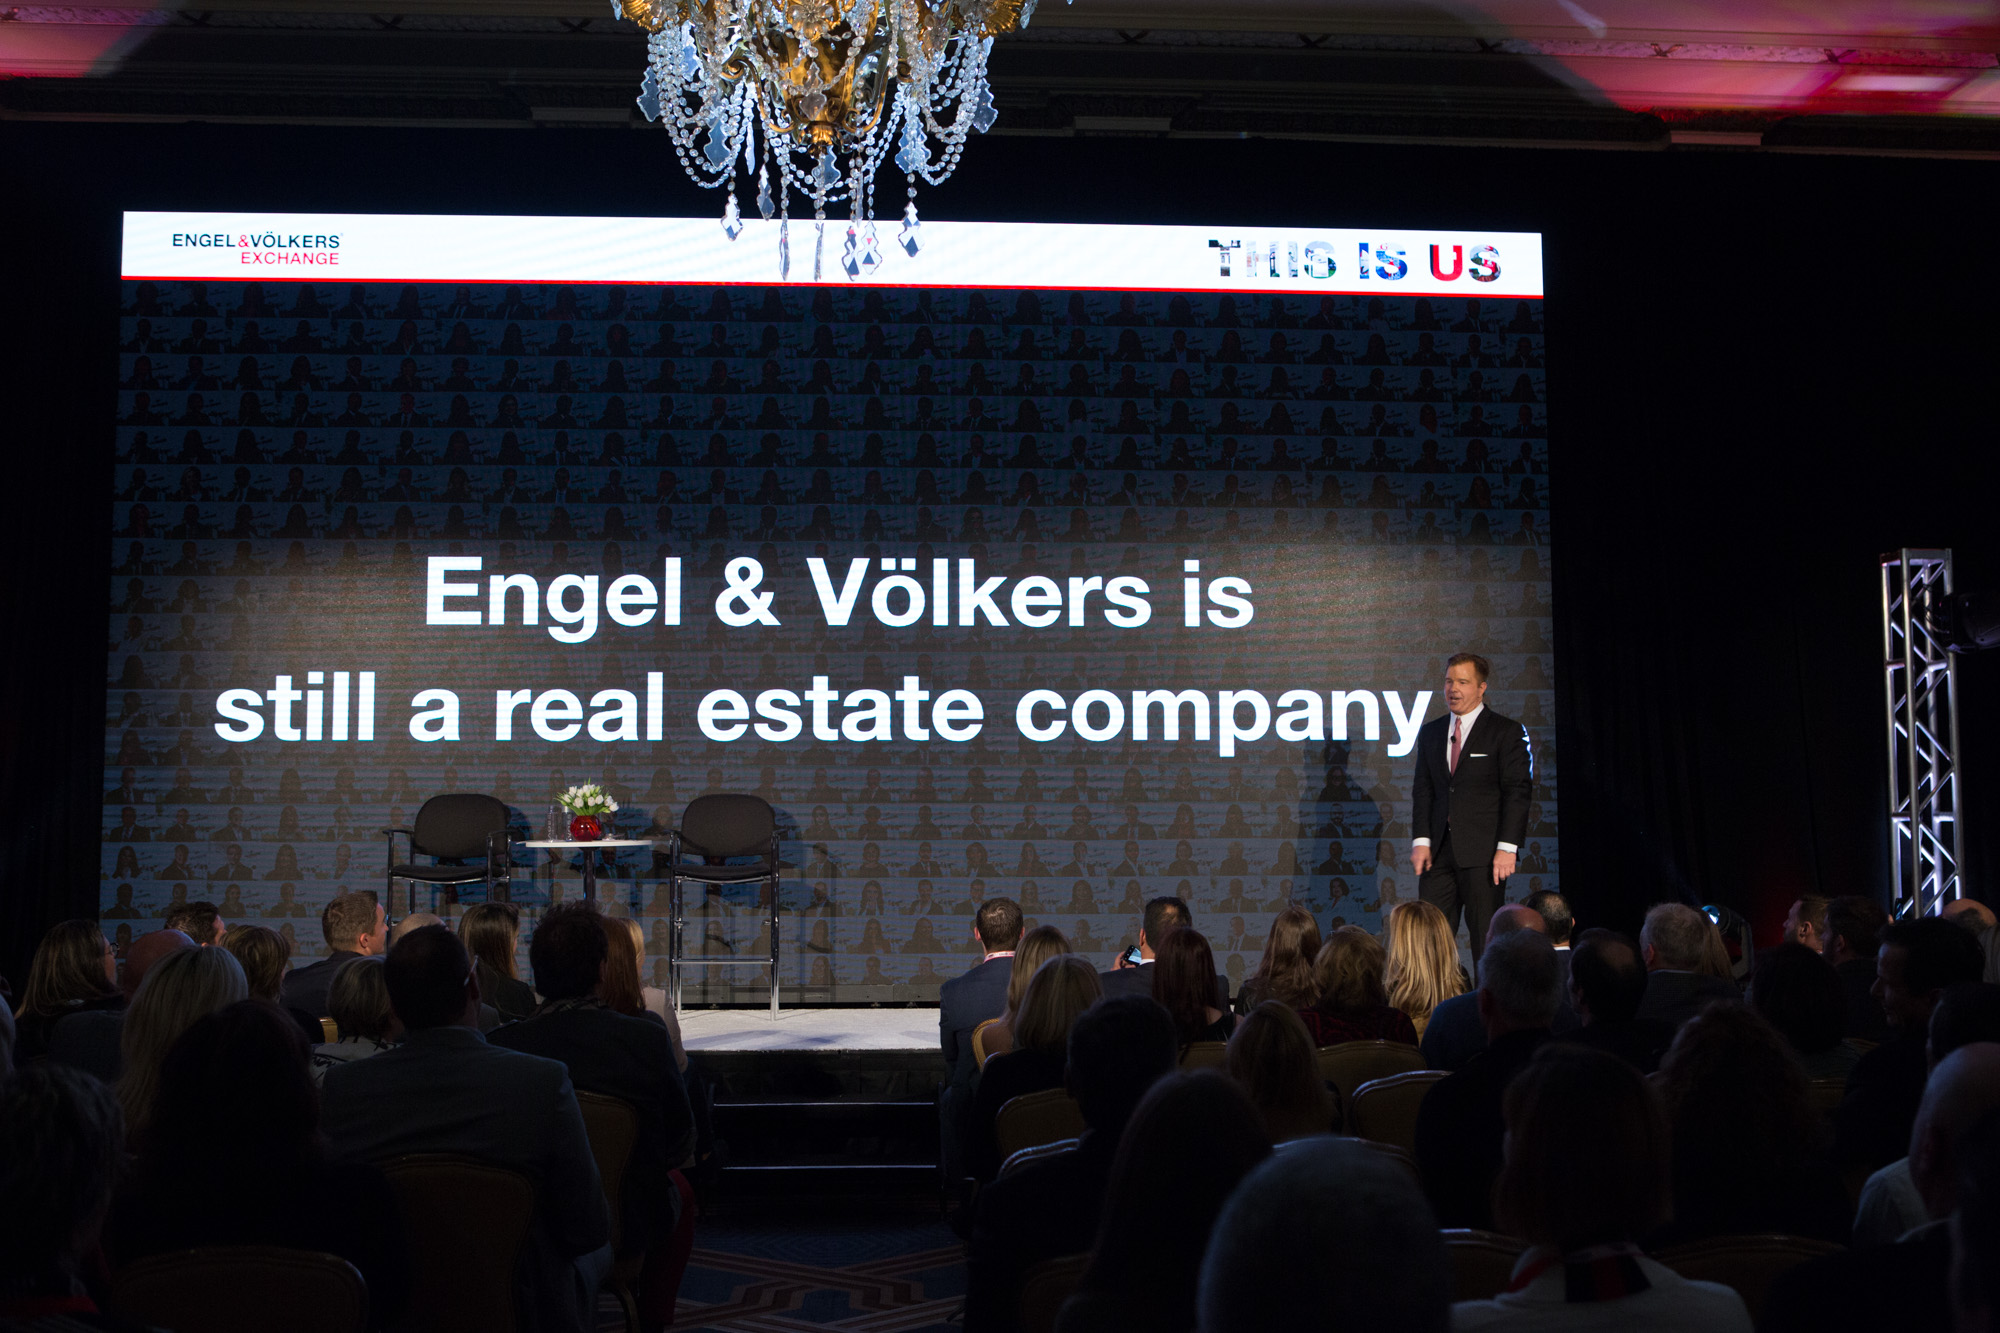 President & CEO of Engel & Völkers Americas Anthony Hitt declares "Engel & Völkers is still a real estate company."